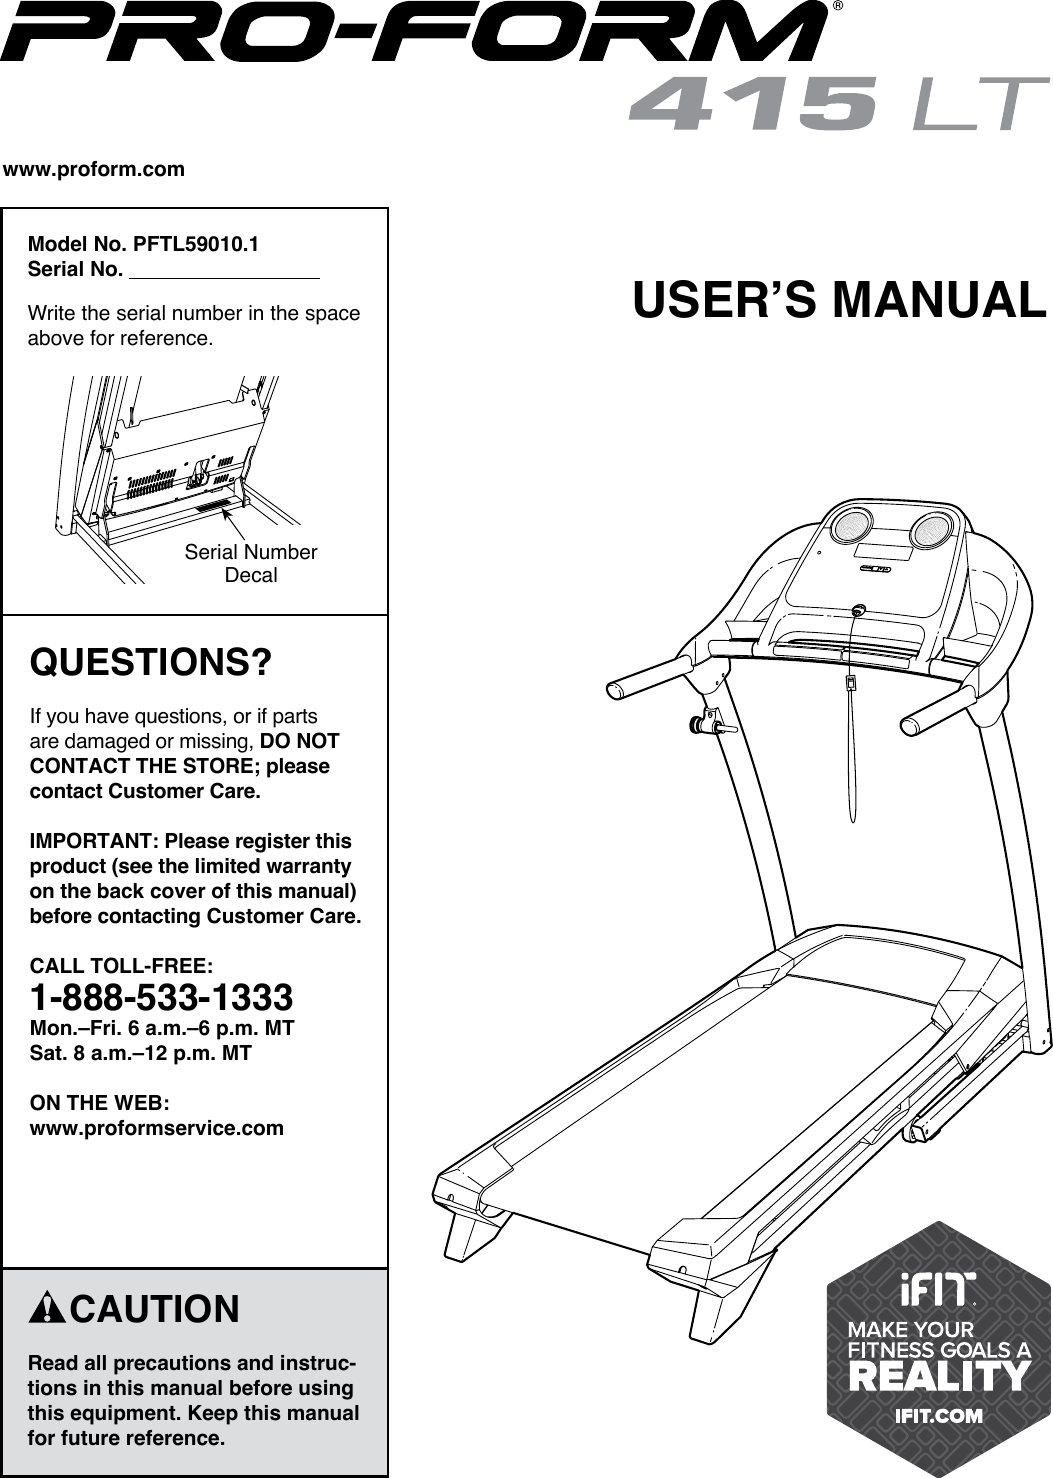 Proform Pftl590101 415 Lt Treadmill Users Manual